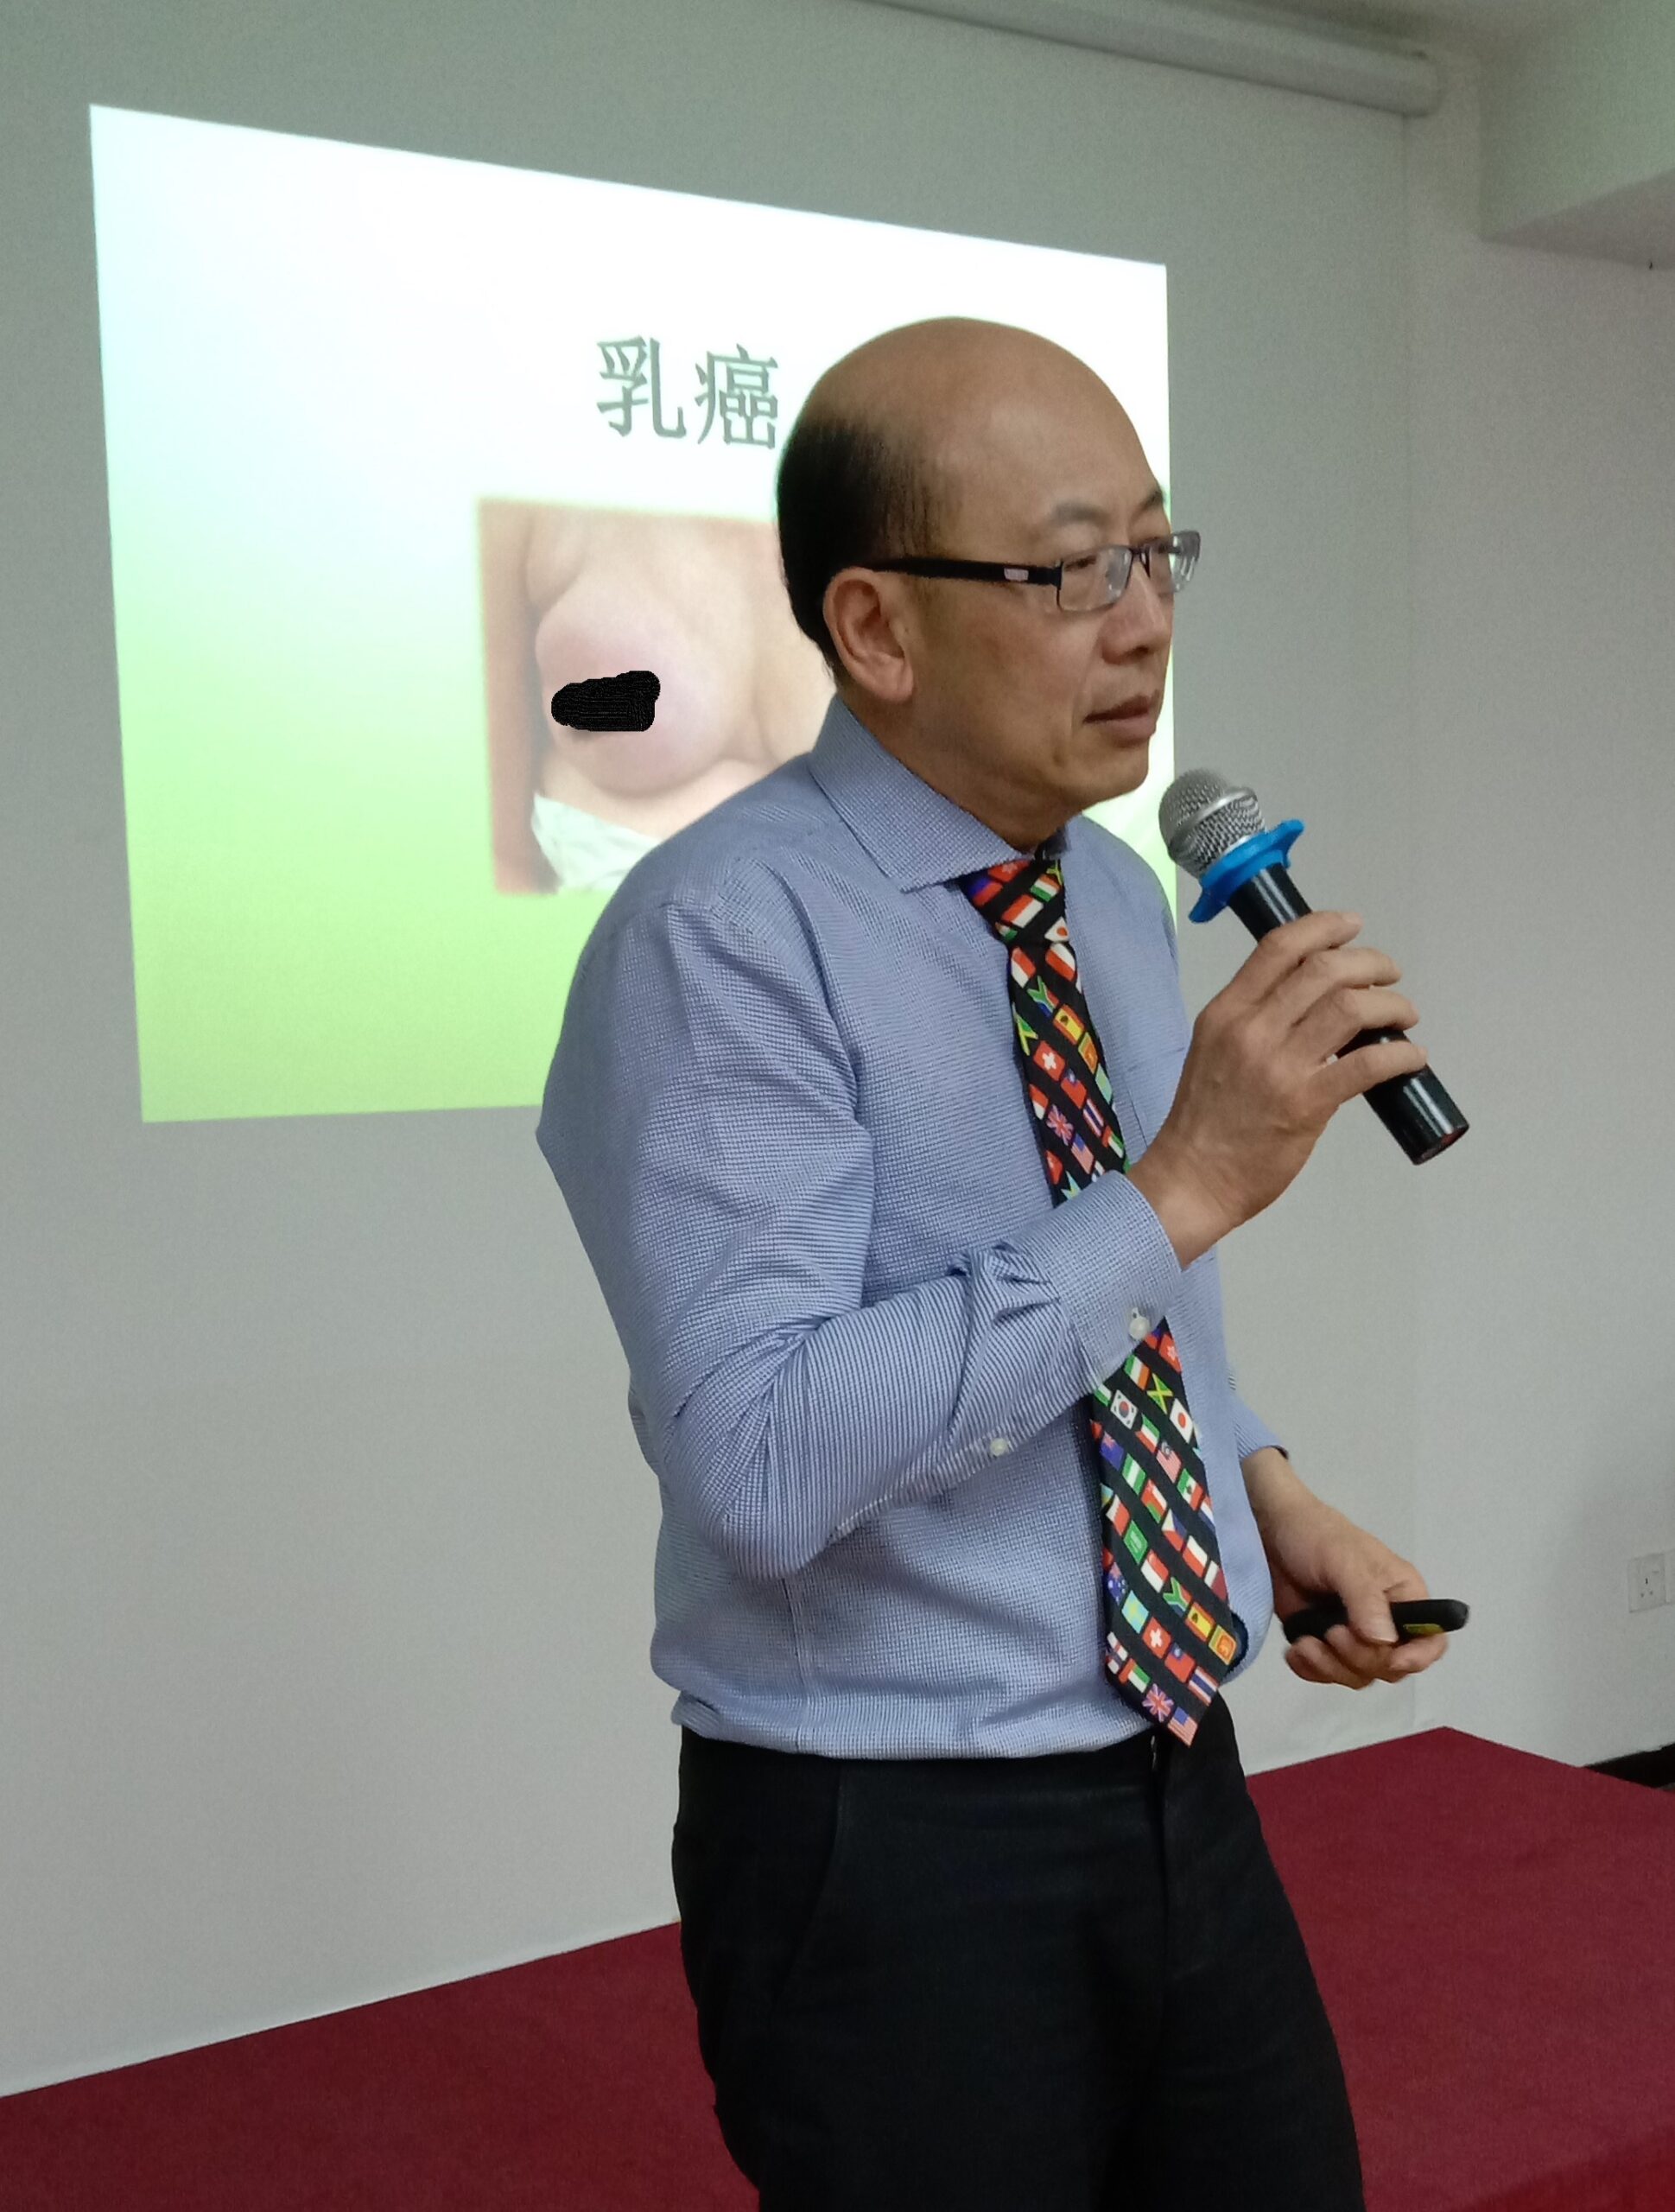 Public Health Talk by Dr Clement Chen (22-06-2019)